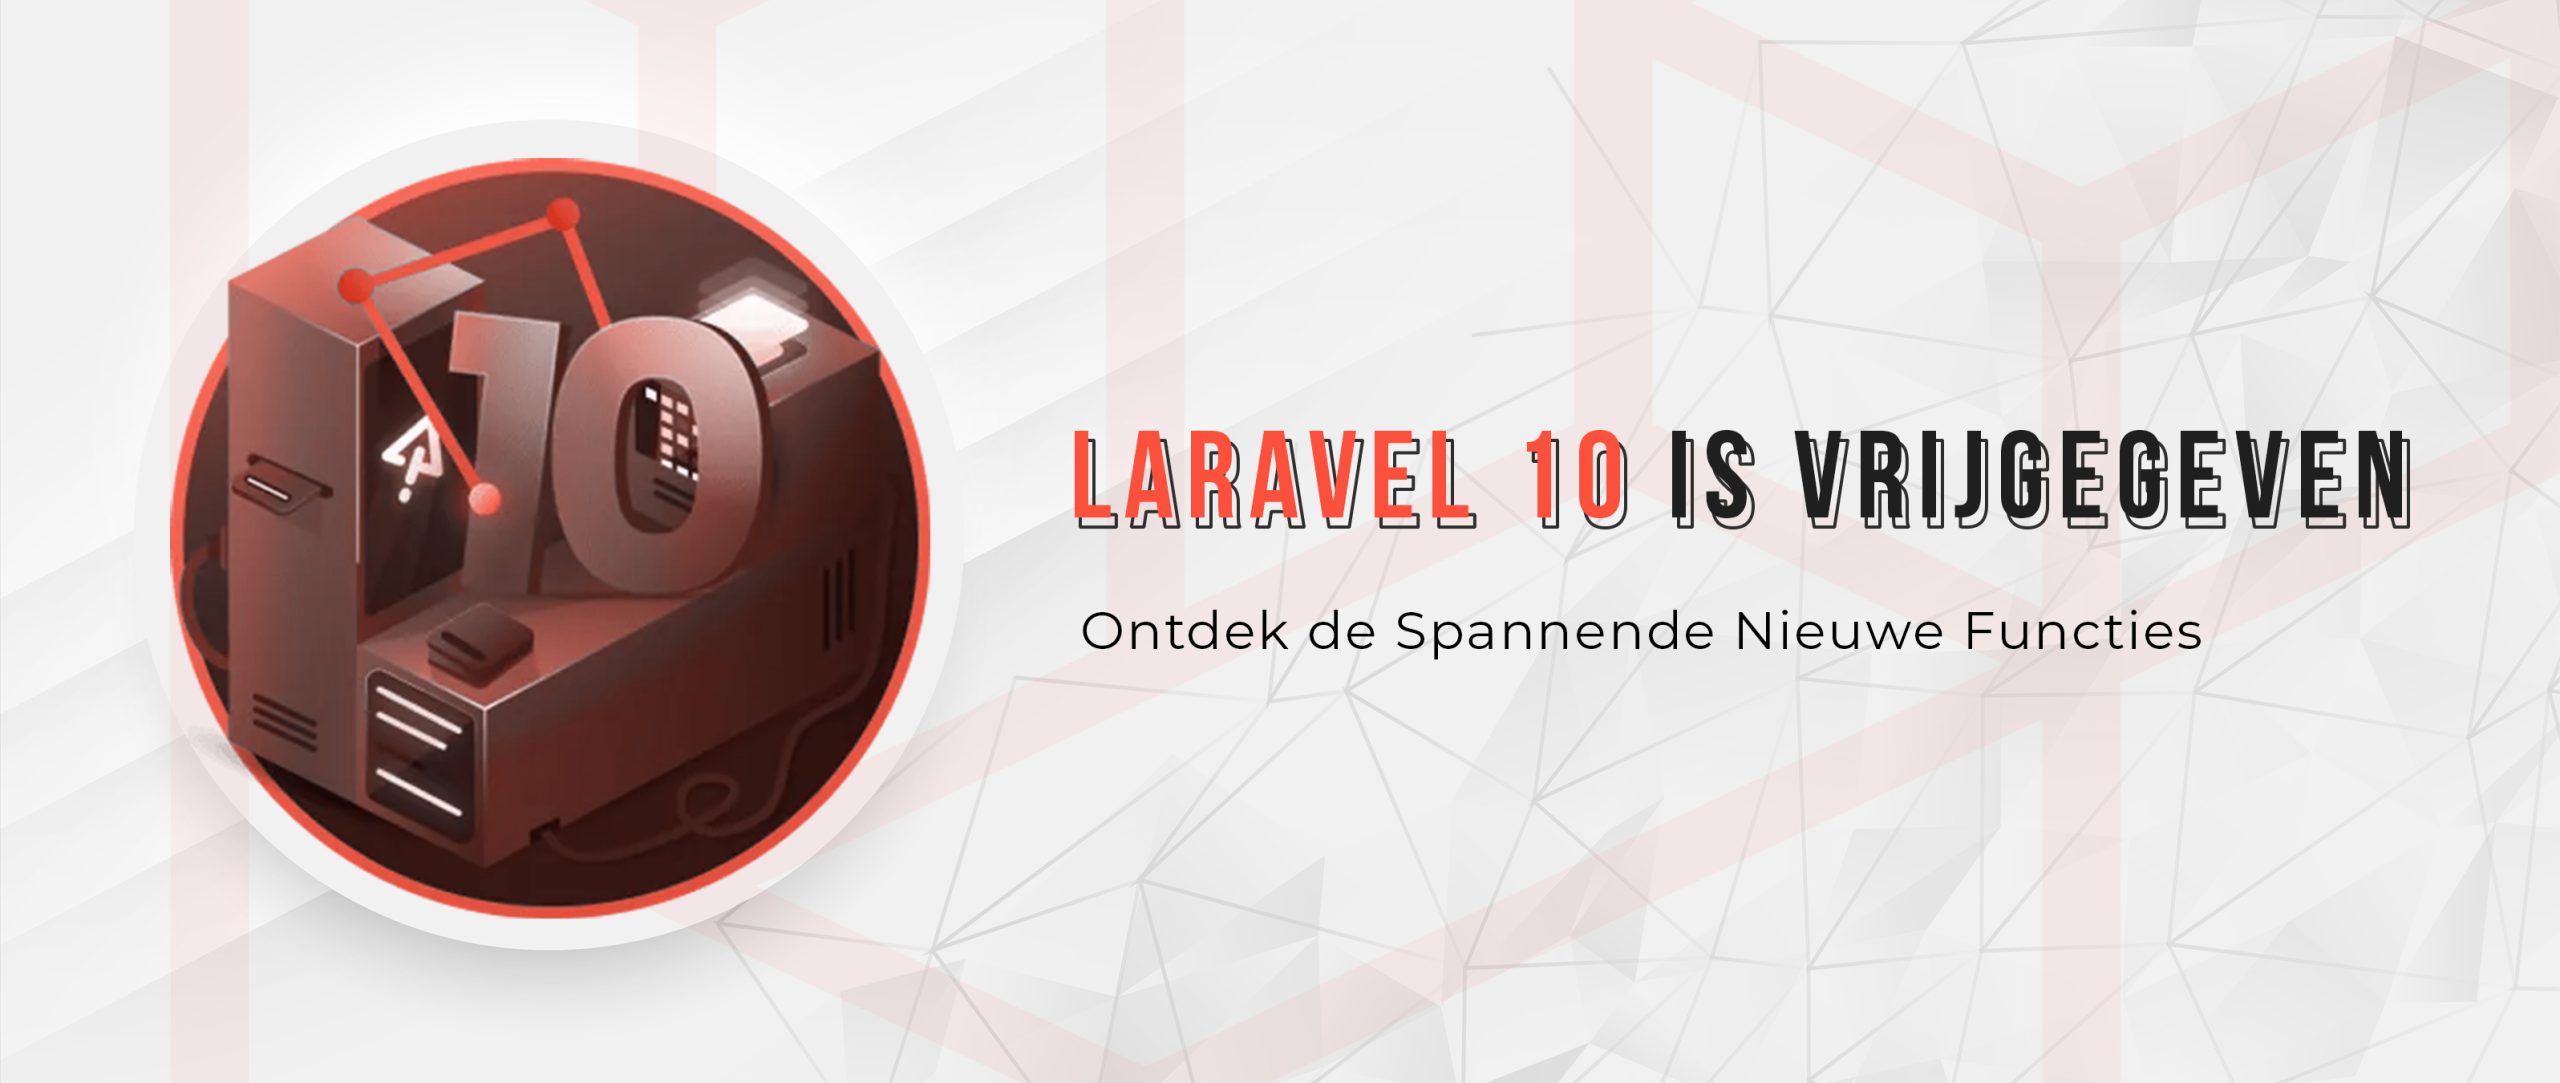 Laravel 10 is vrijgegeven: Ontdek de spannende nieuwe functies